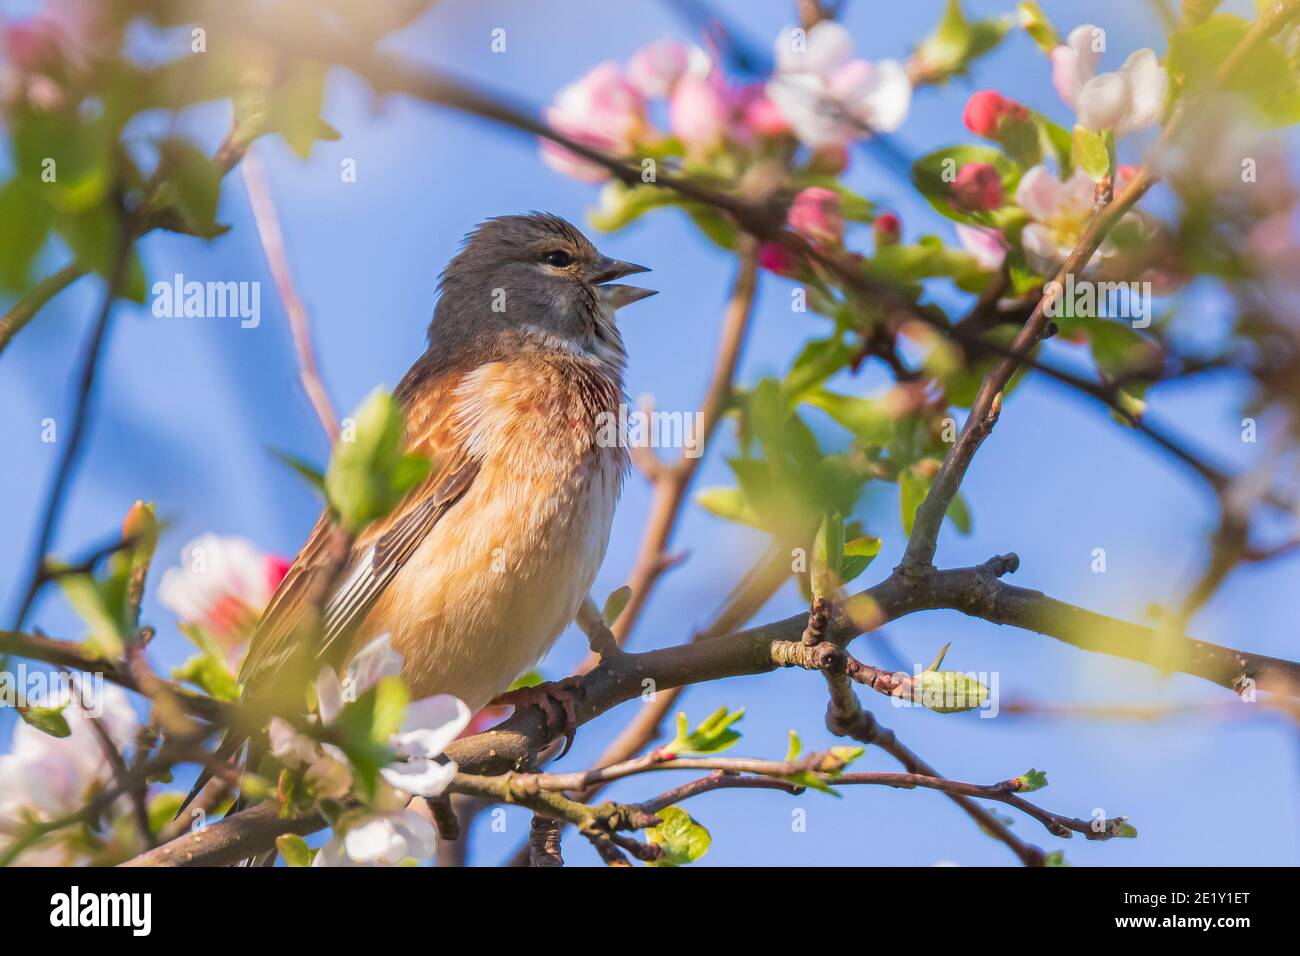 Nahaufnahme Porträt einer Linnett Vogel Weibchen, Carduelis cannabina, Display und die Suche nach einem Partner während der Frühjahrssaison. Blauer Himmel Stockfoto